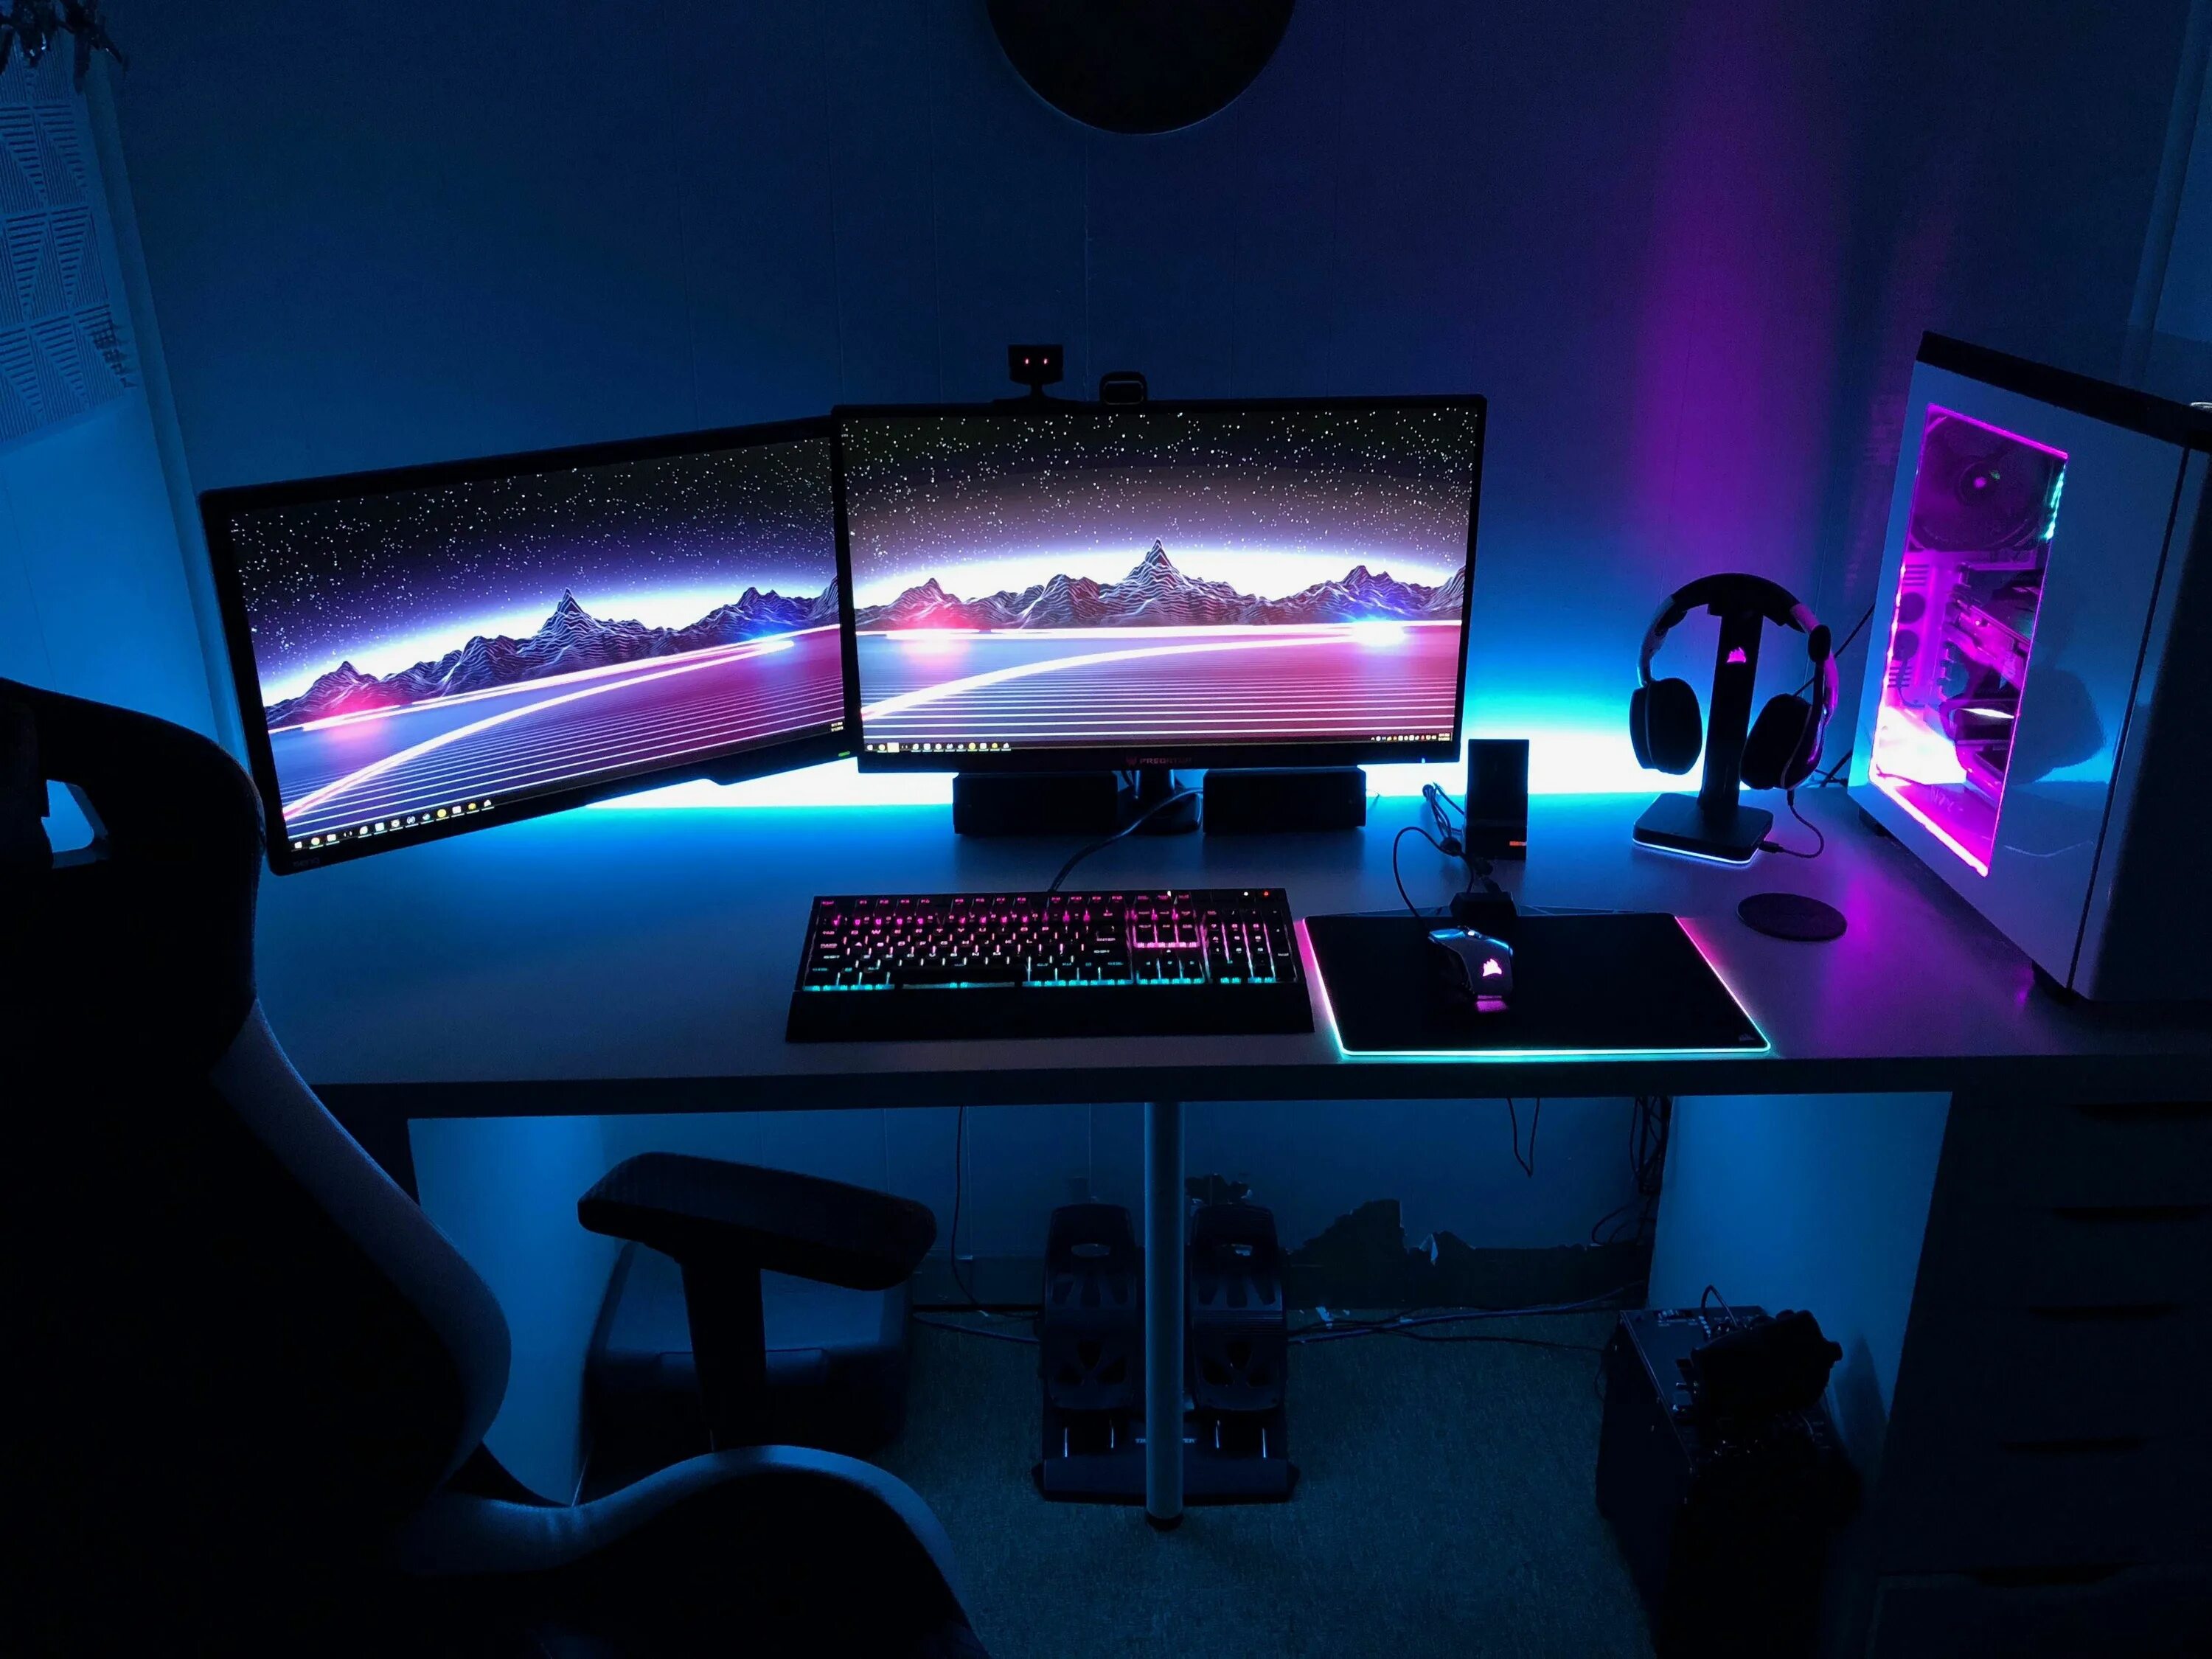 Night gamer full. Красивые компьютерные комнаты. Игровая комната геймерская. Геймерские комнаты с подсветкой. Геймерская комната с подсветкой.